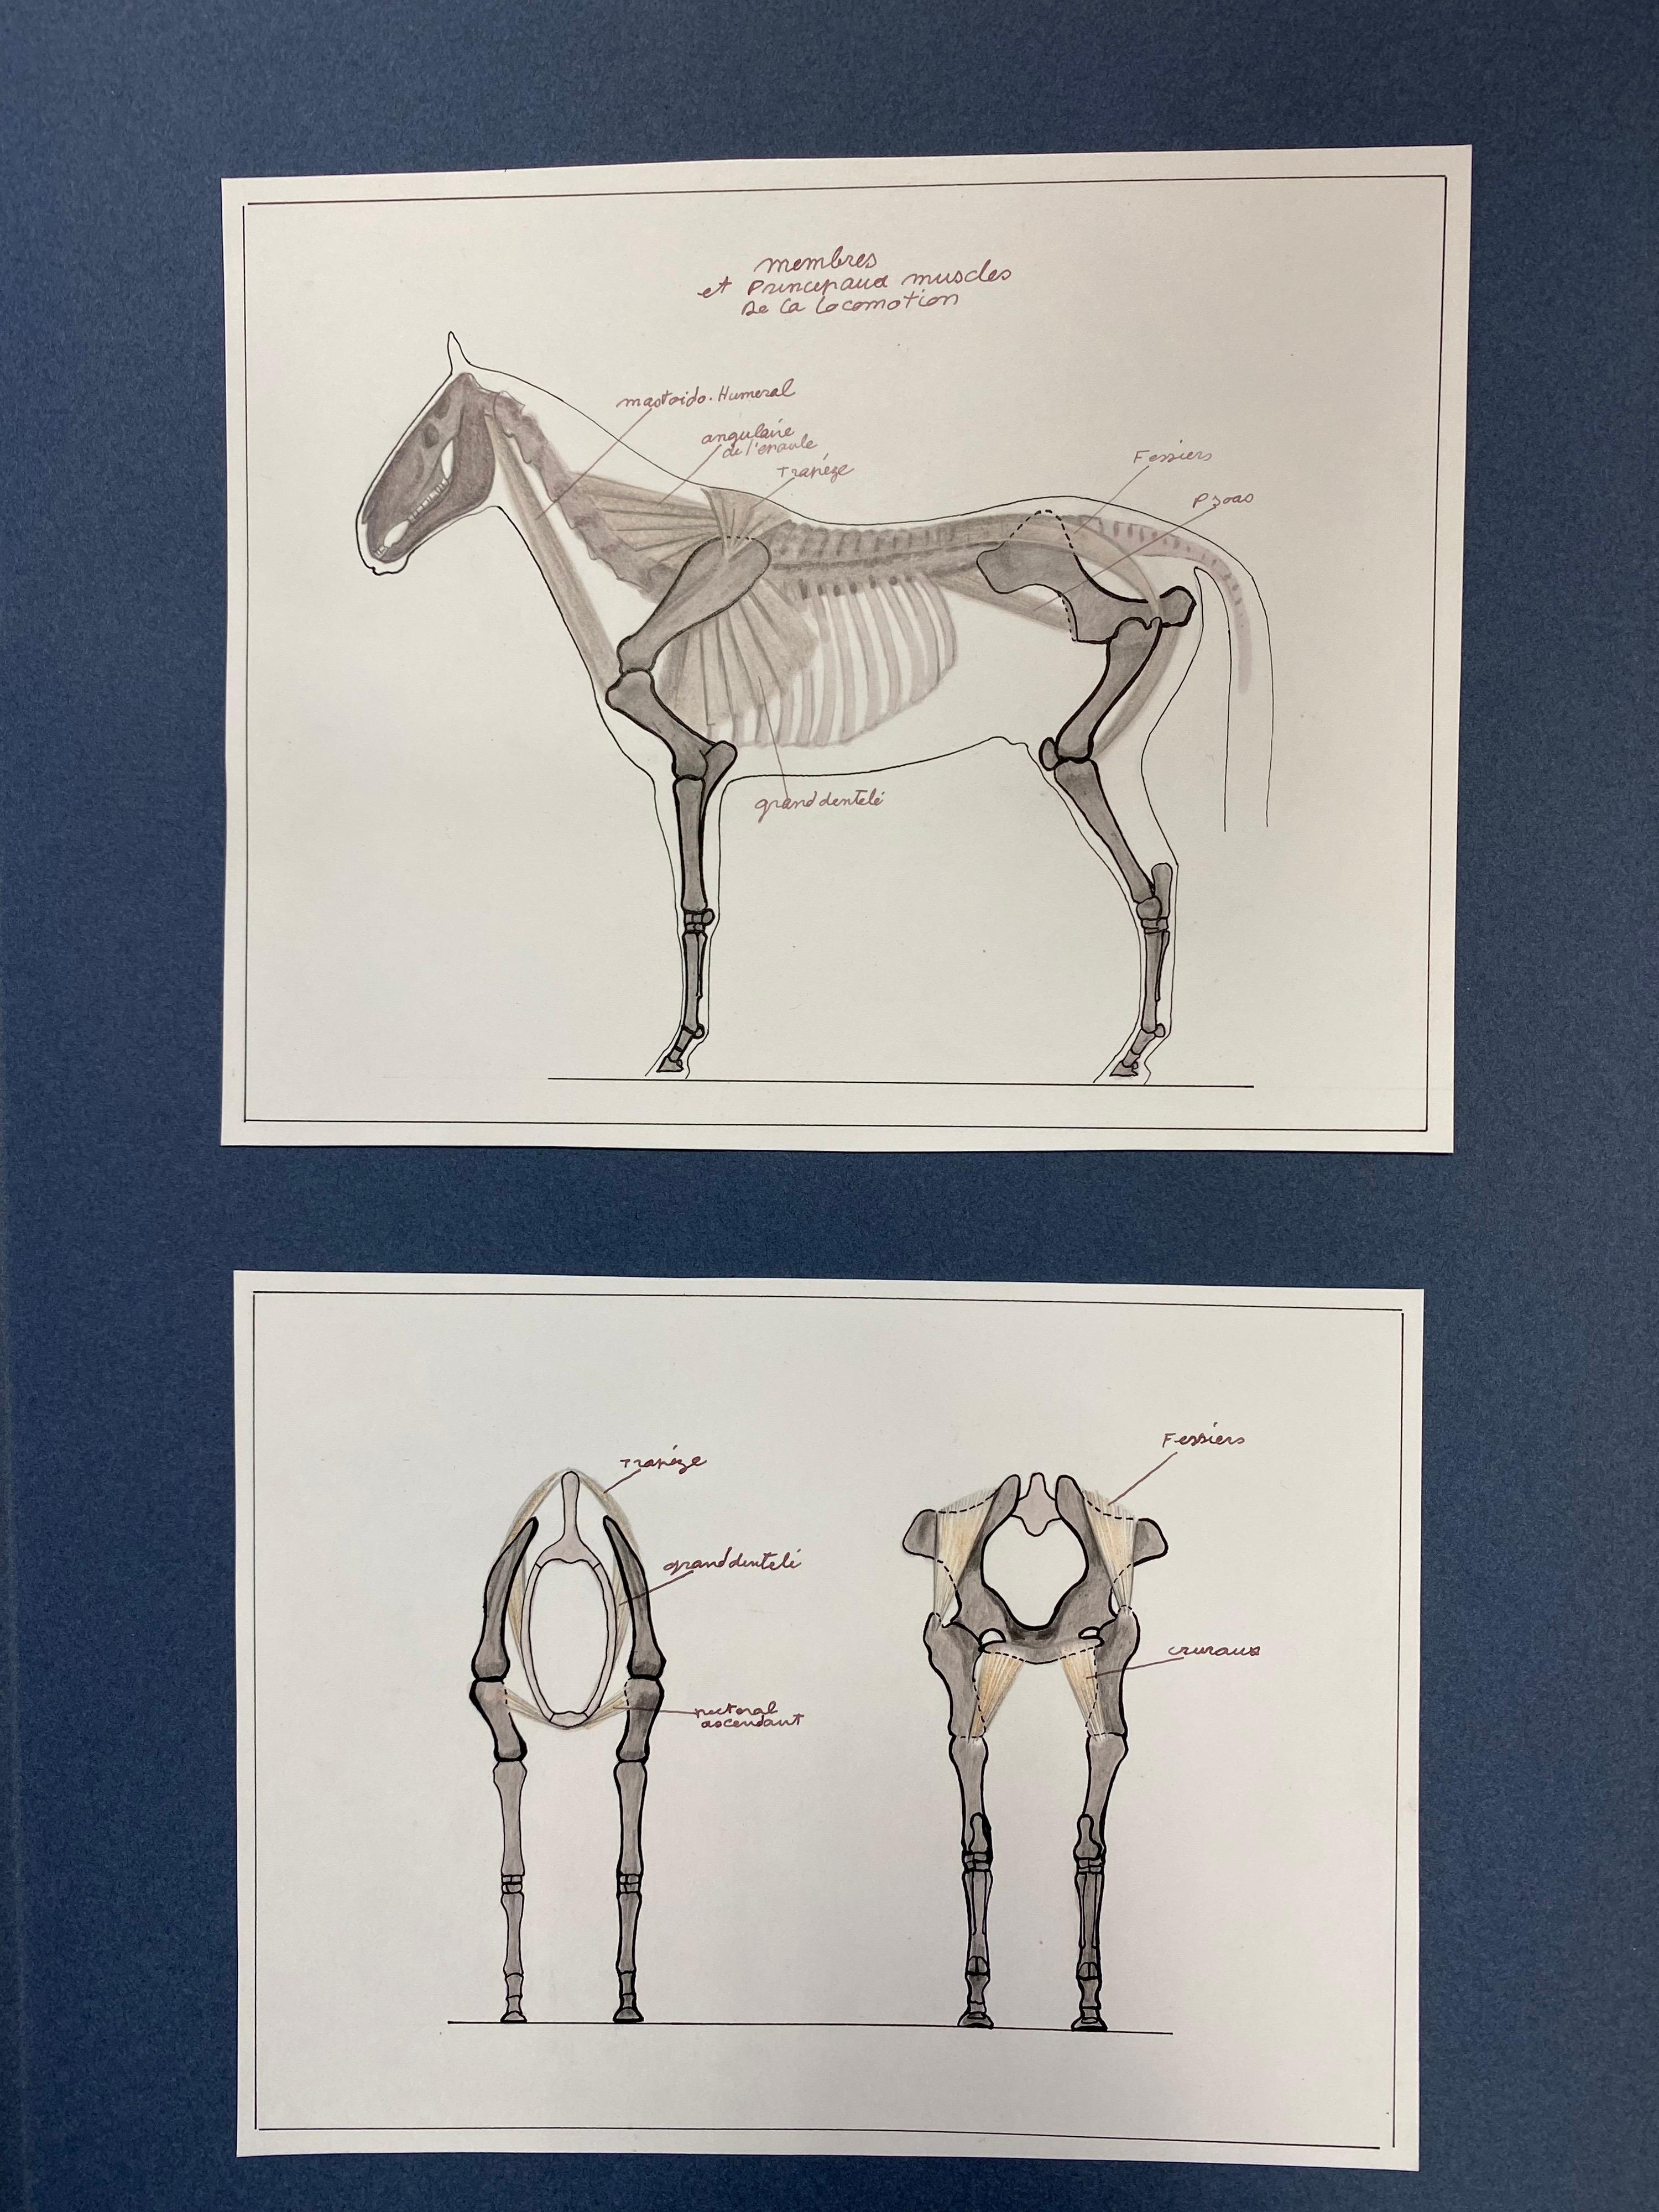 Anatomiezeichnungen eines Pferdes – Original französisches Kunstwerk, Reiteranatomiestudie